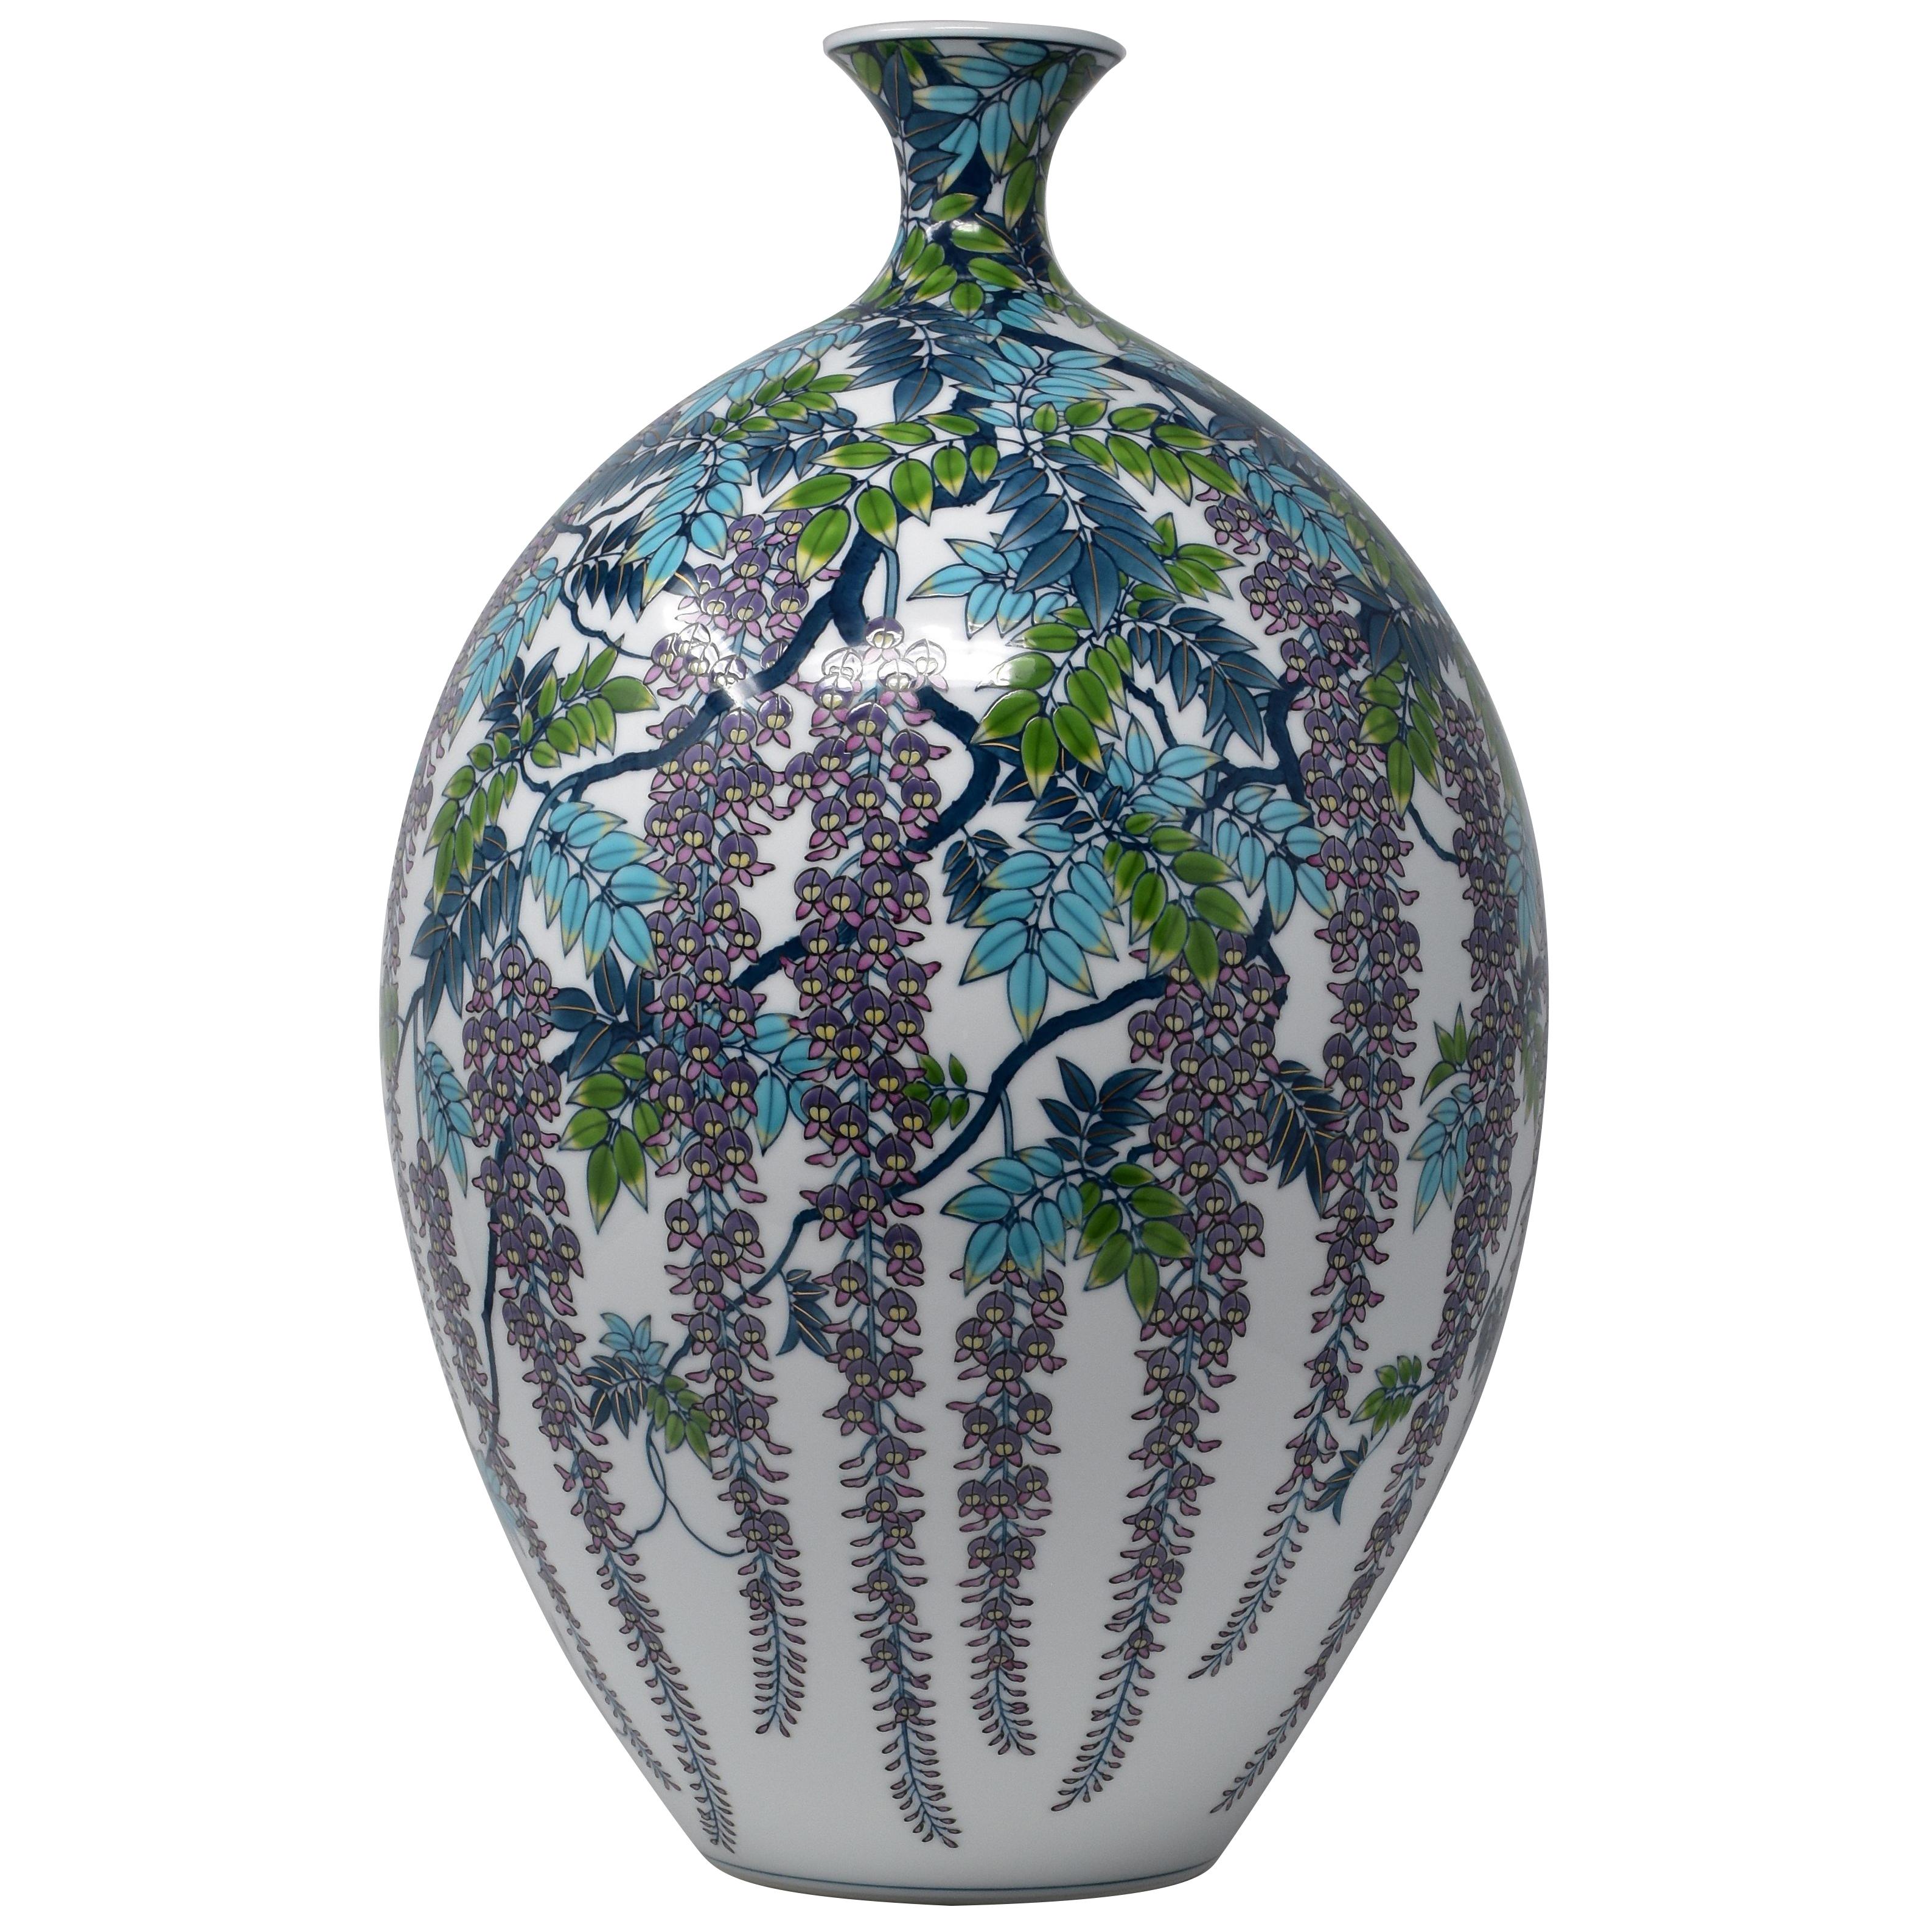 Vase japonais contemporain en porcelaine bleu, violet et vert par un maître artiste